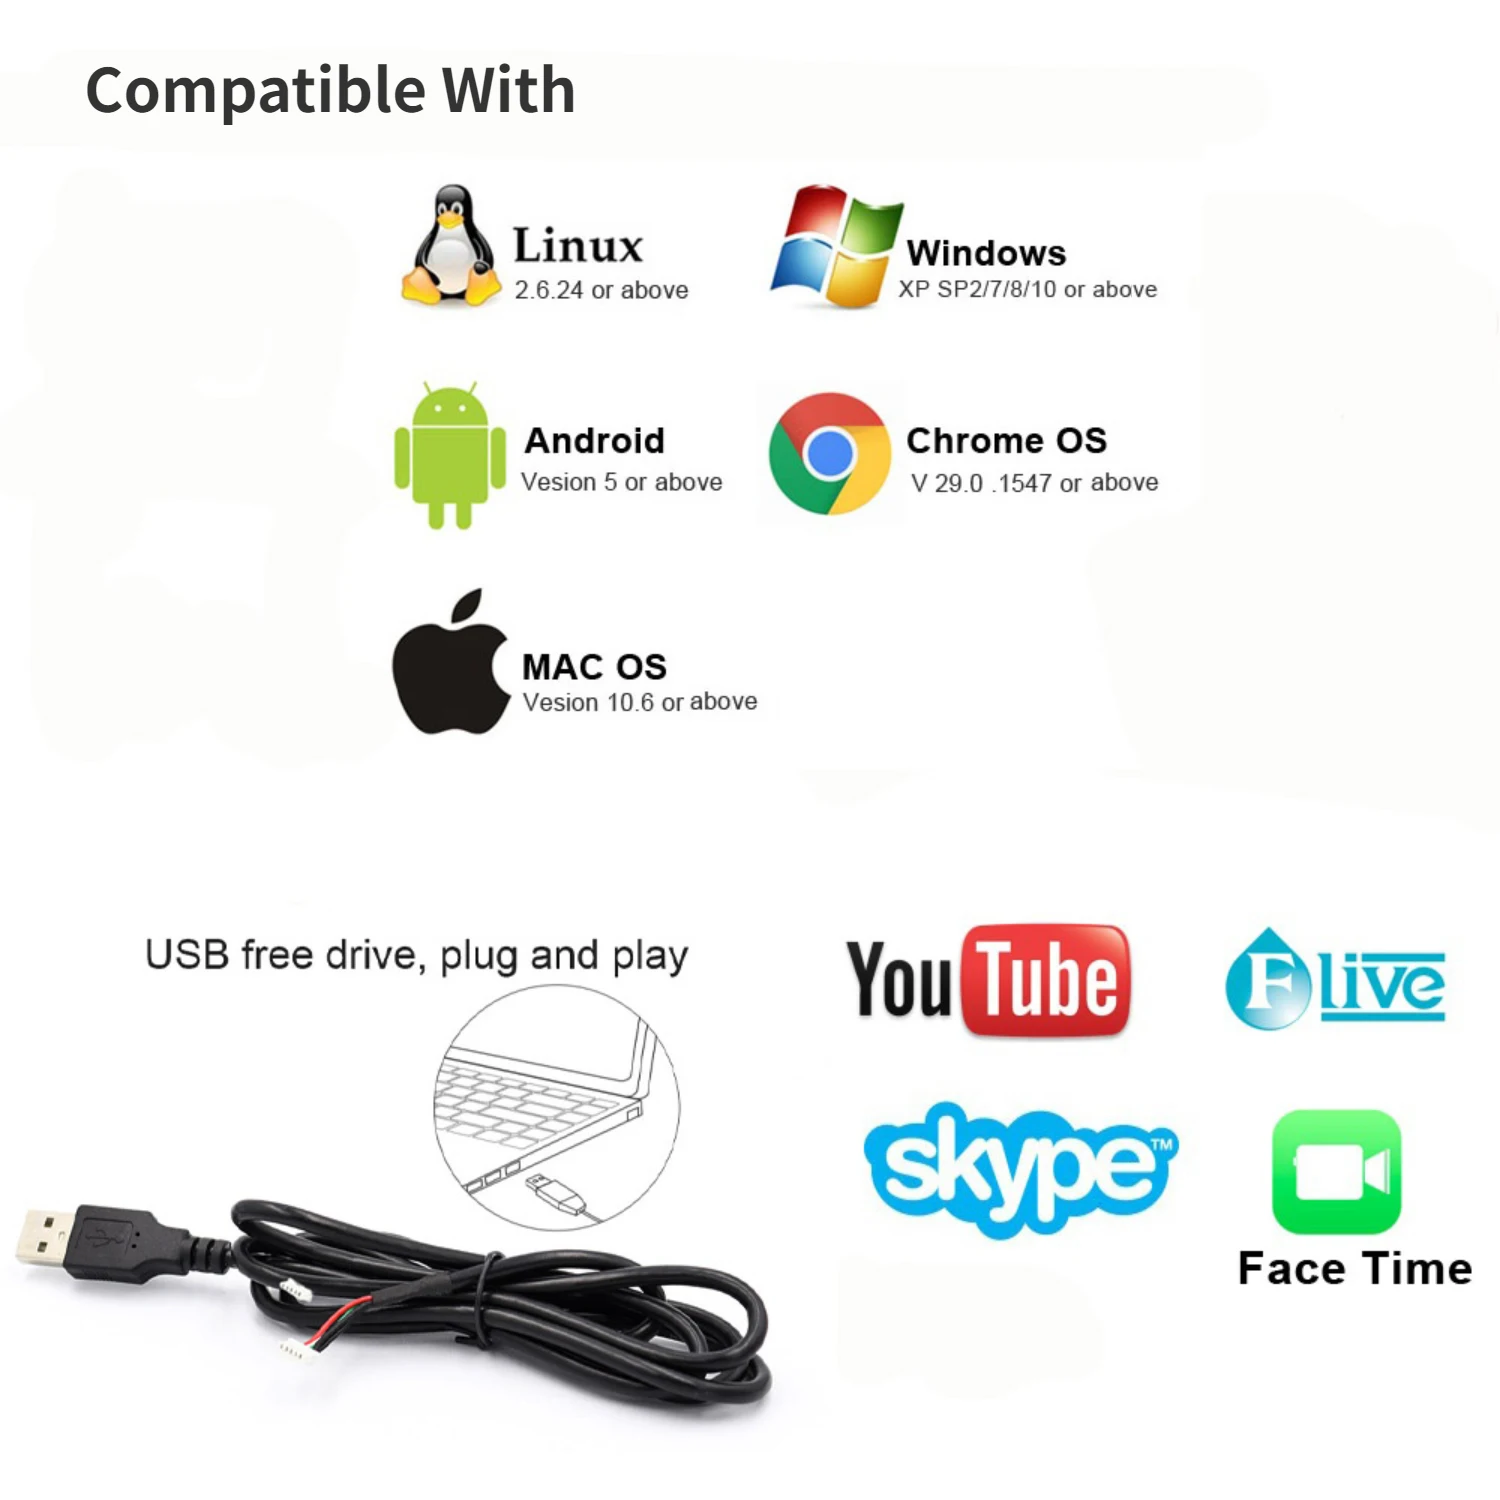 IMX298 16-Мегапиксельный Модуль USB-камеры с автофокусом, 16-Мегапиксельная Веб-камера с автофокусировкой HD, 4656x3496 10 кадров в секунду, подключи и играй Для Android Linux Windows - 5